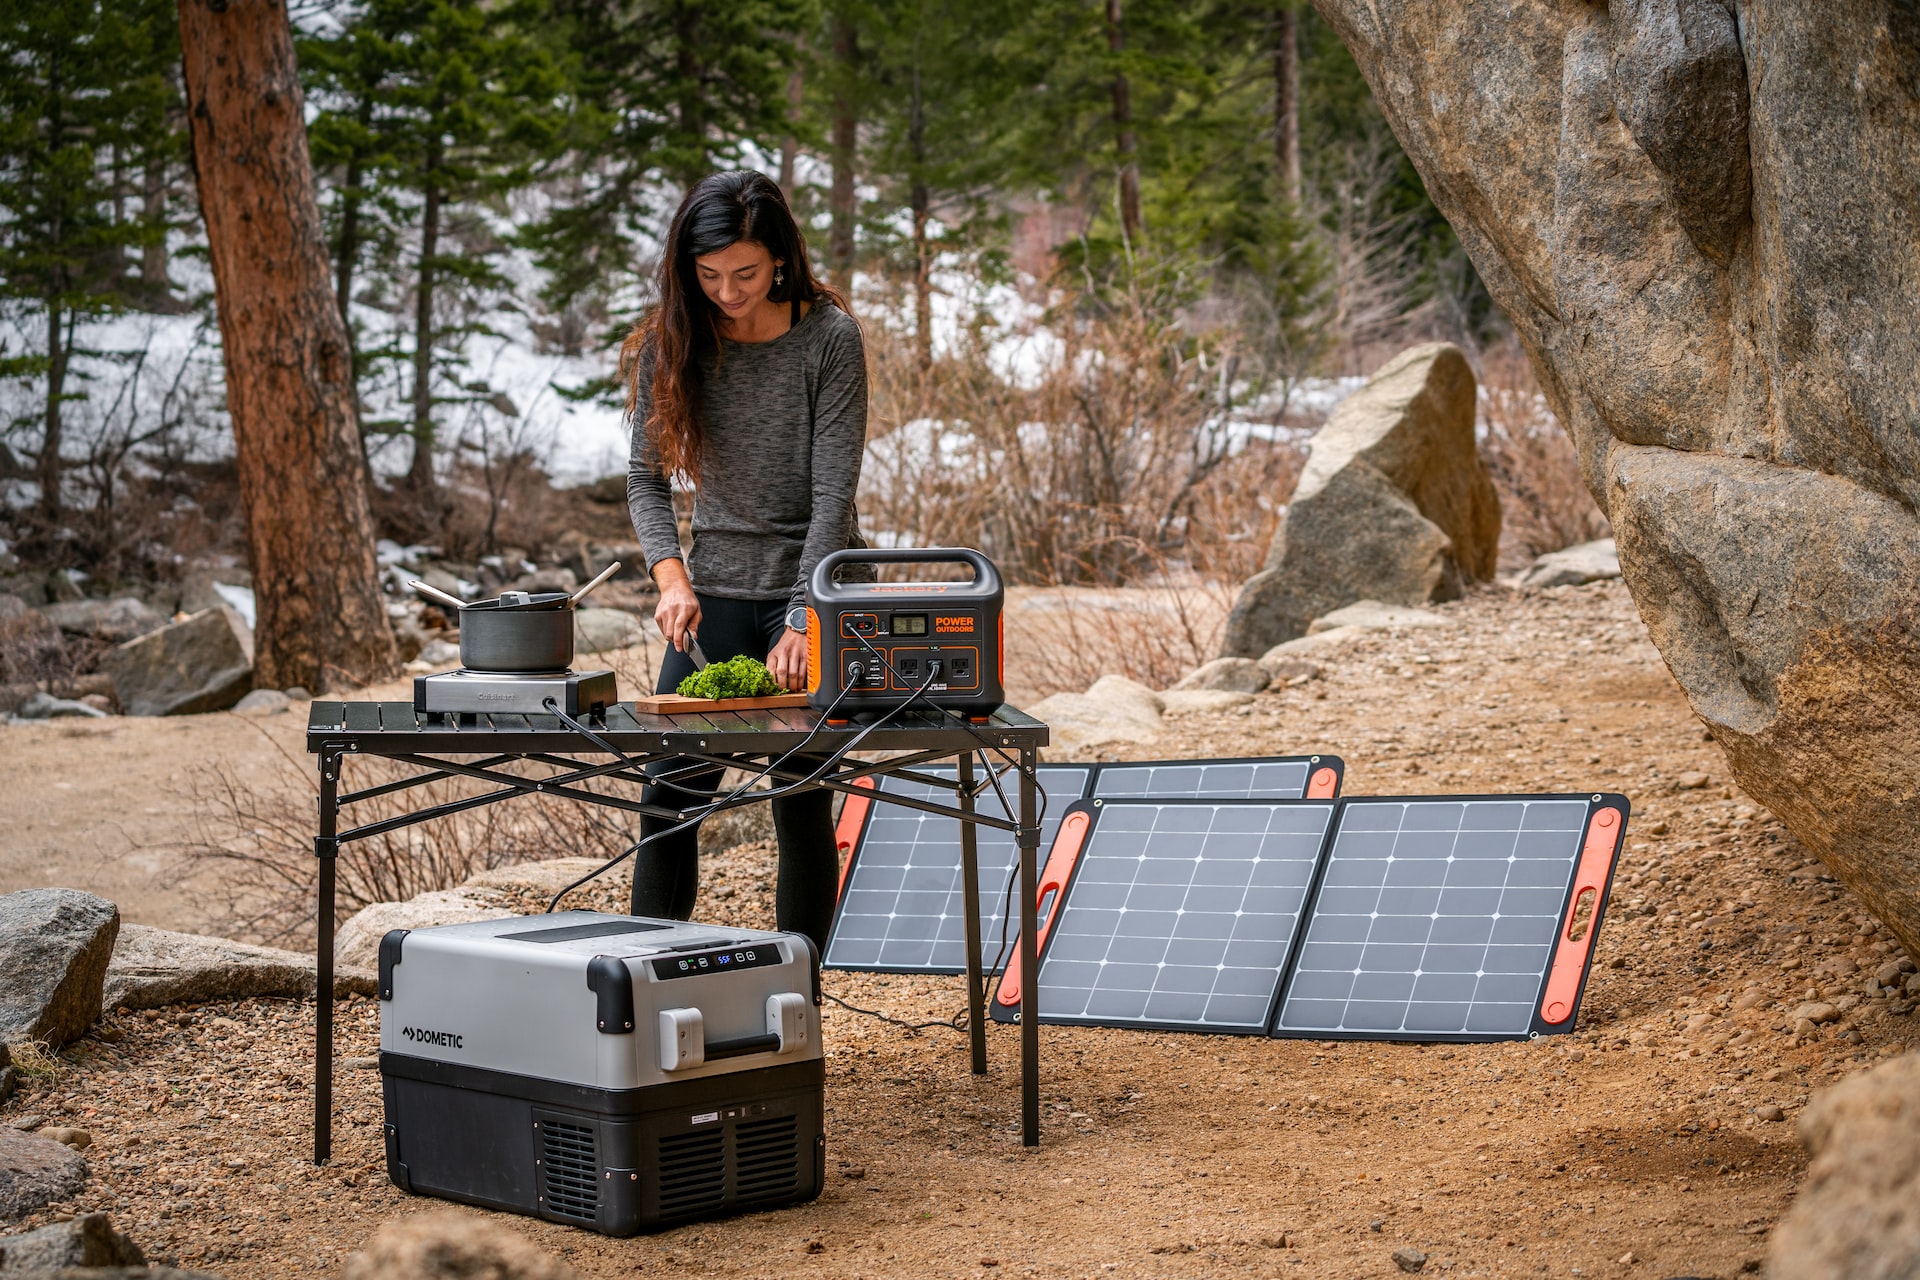 Solargeneratoren für Camping und Outdoor